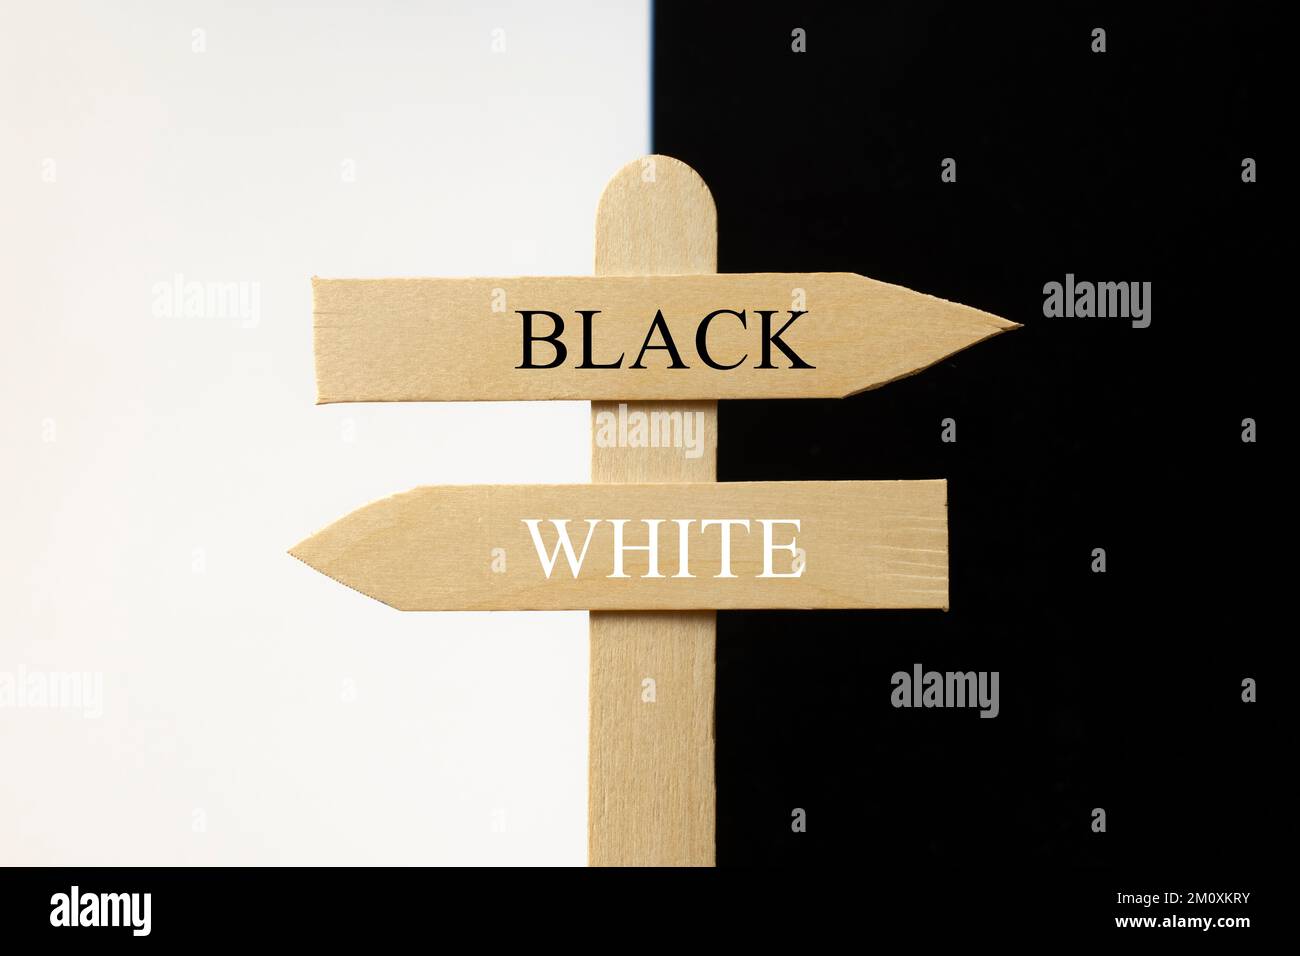 Cartel de madera señalando negro hacia un lado y blanco hacia el otro Stock Photo